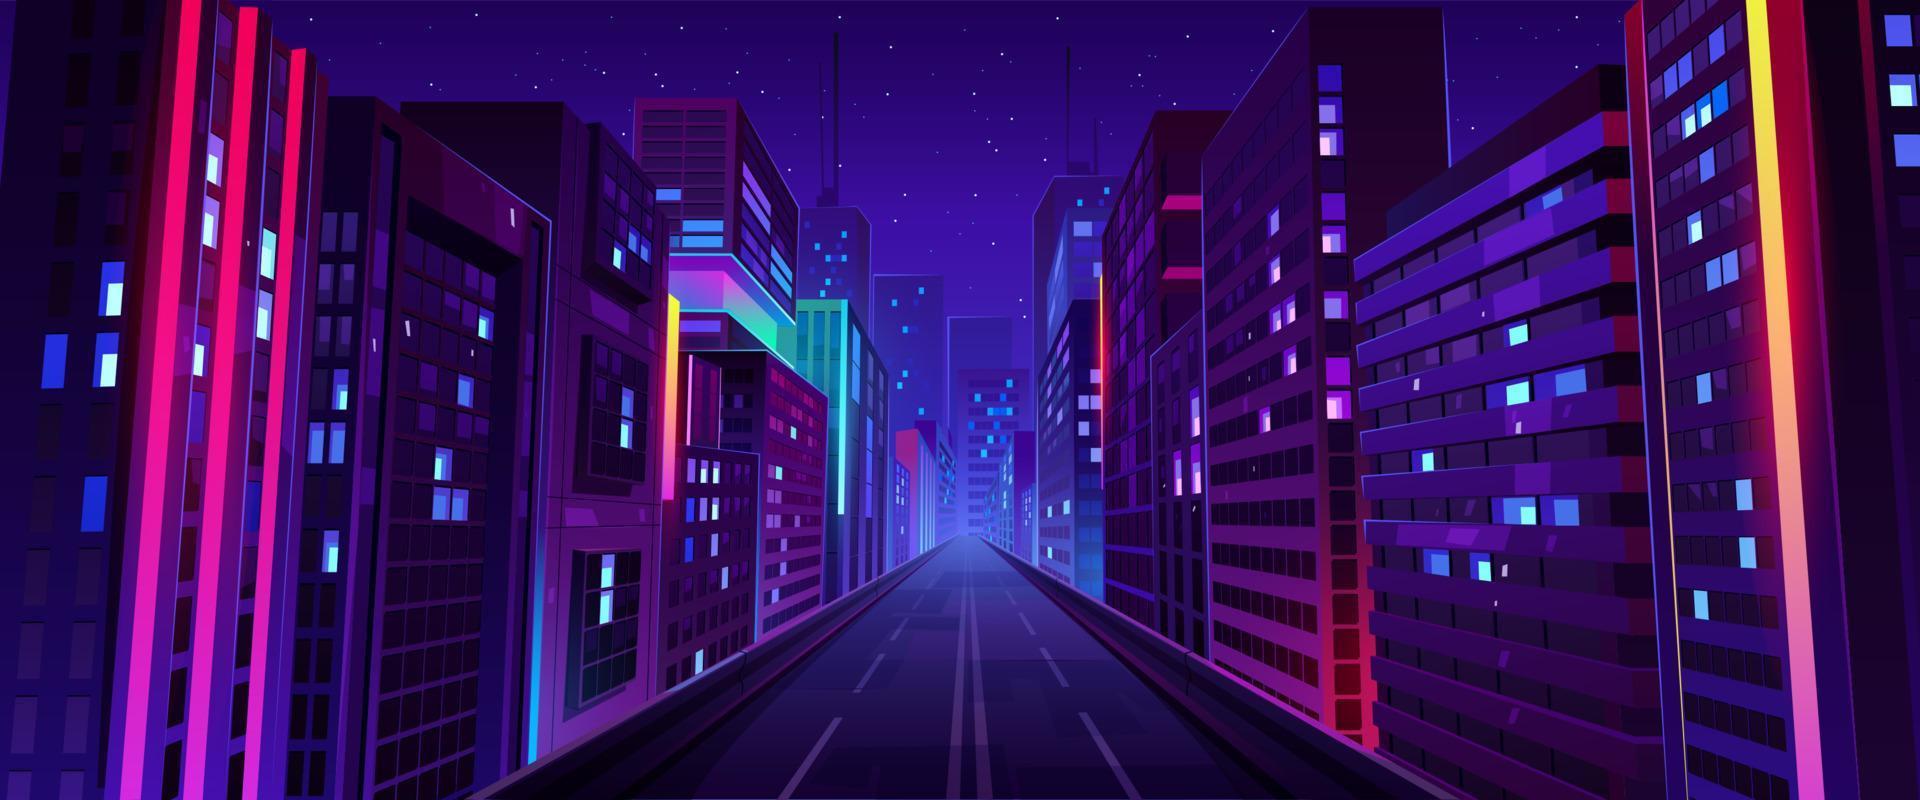 stad natt gata, väg och hus med neon lig vektor